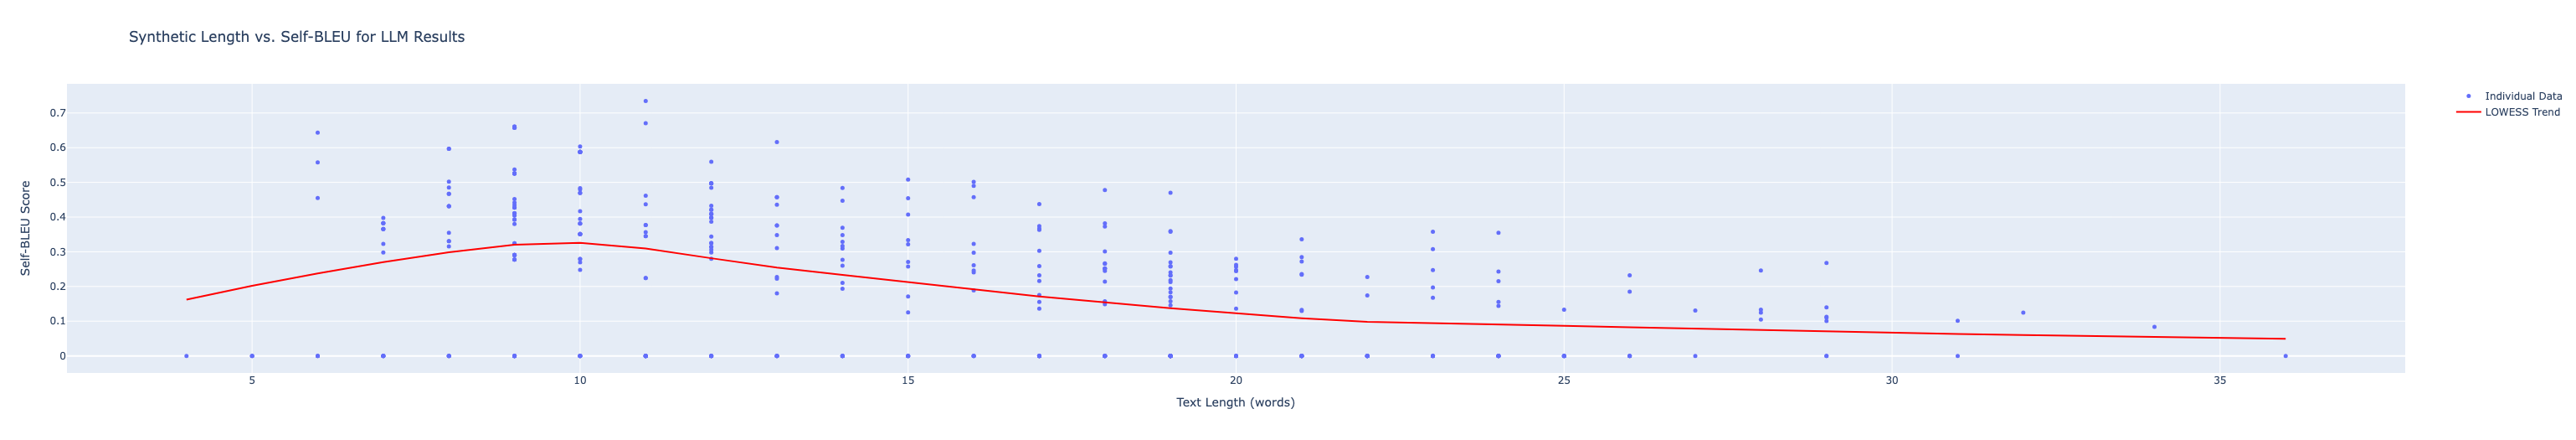 Scores vs. content length